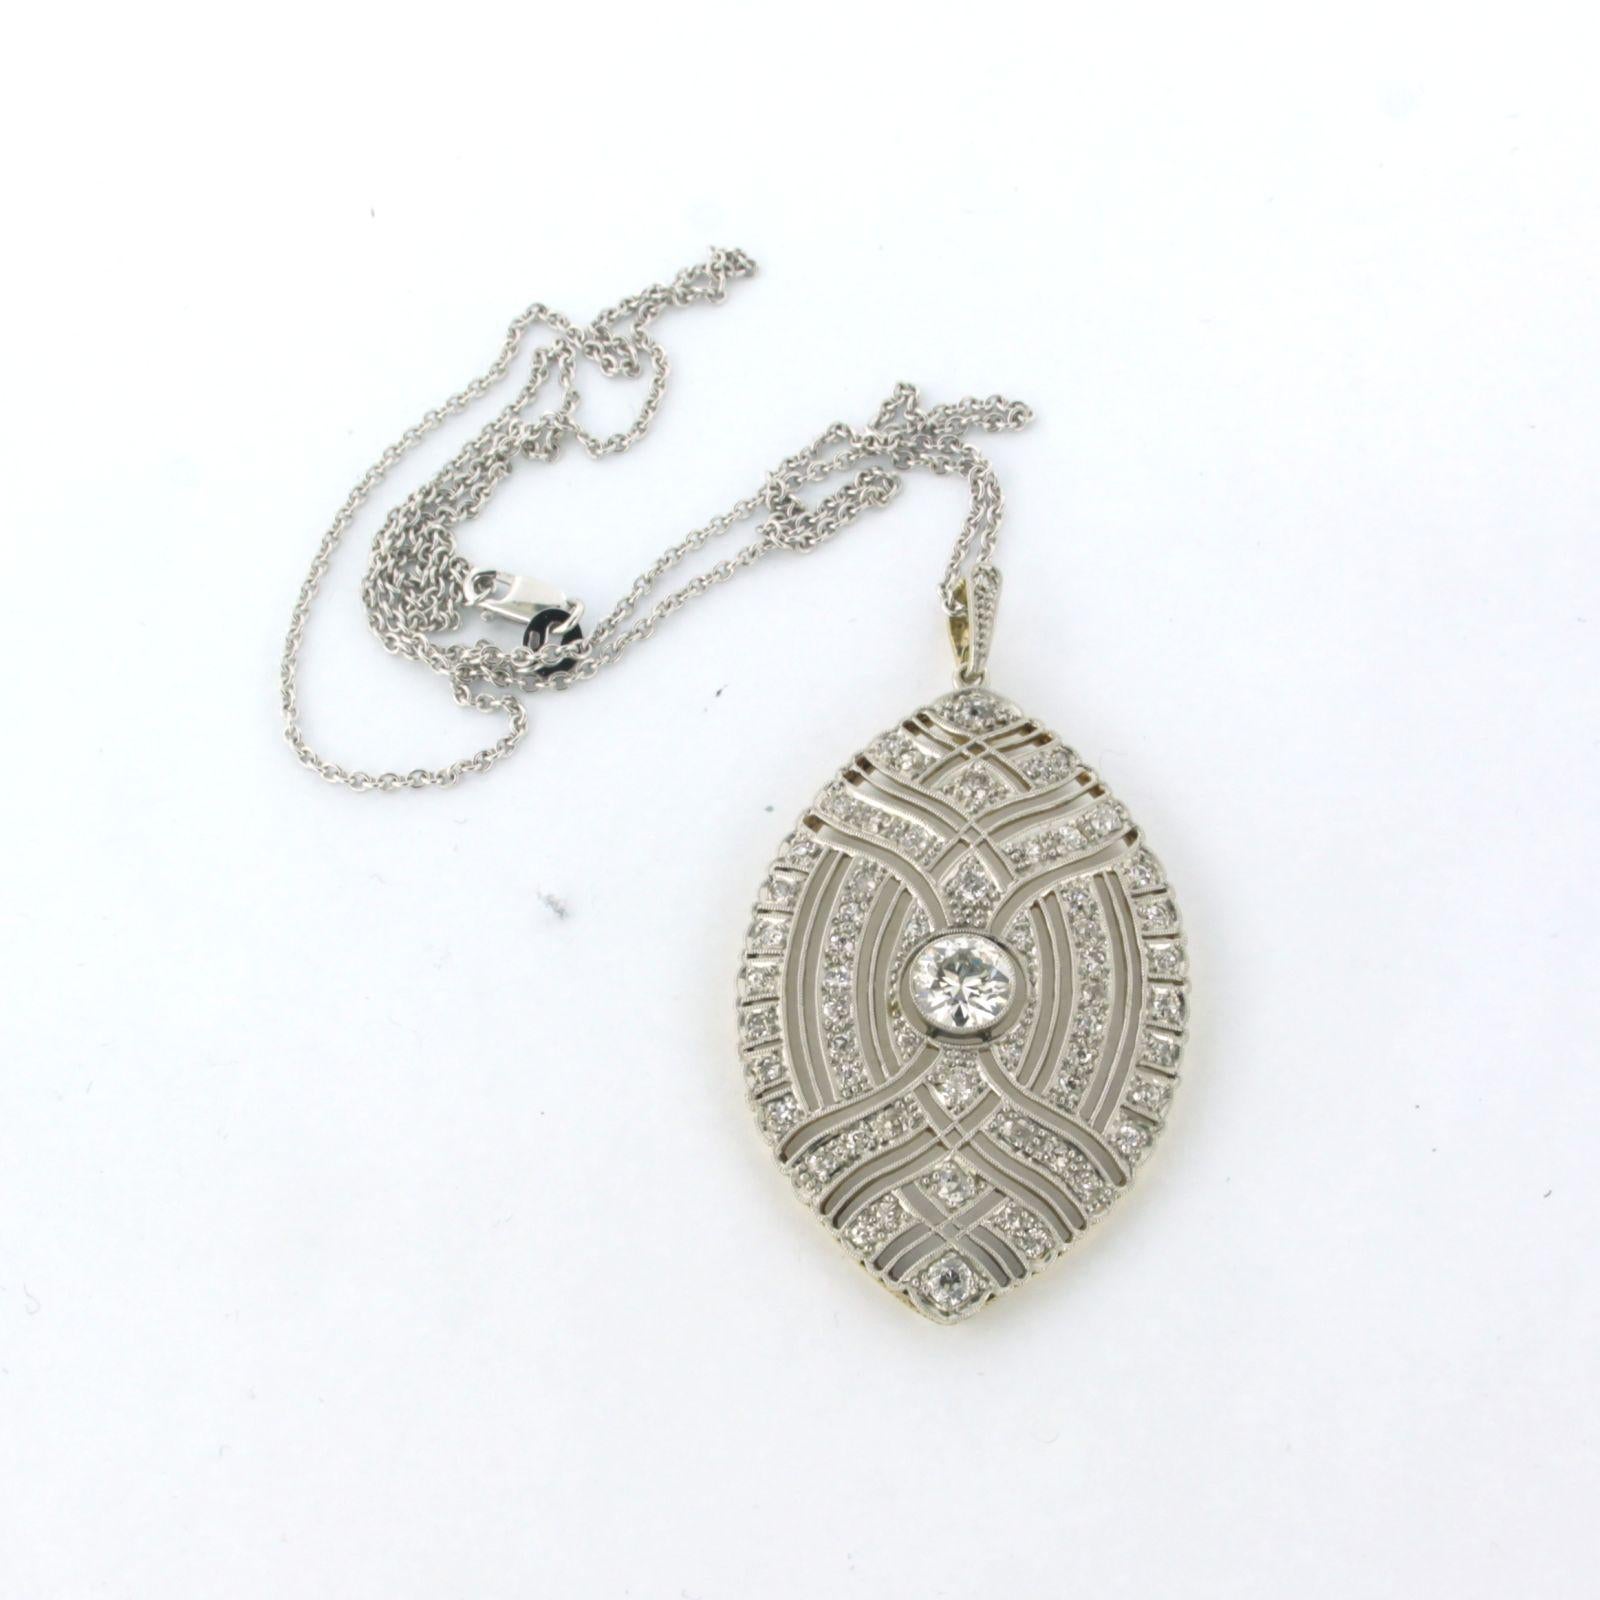 Collier en platine 950Pt avec un pendentif en or et platine serti d'un diamant de taille européenne ancienne au centre. 1.10ct - G/H - VS2/SI1 - et autour de lui des diamants anciens de taille unique jusqu'à. 1.00ct - F/G - VS/SI - 50 cm de